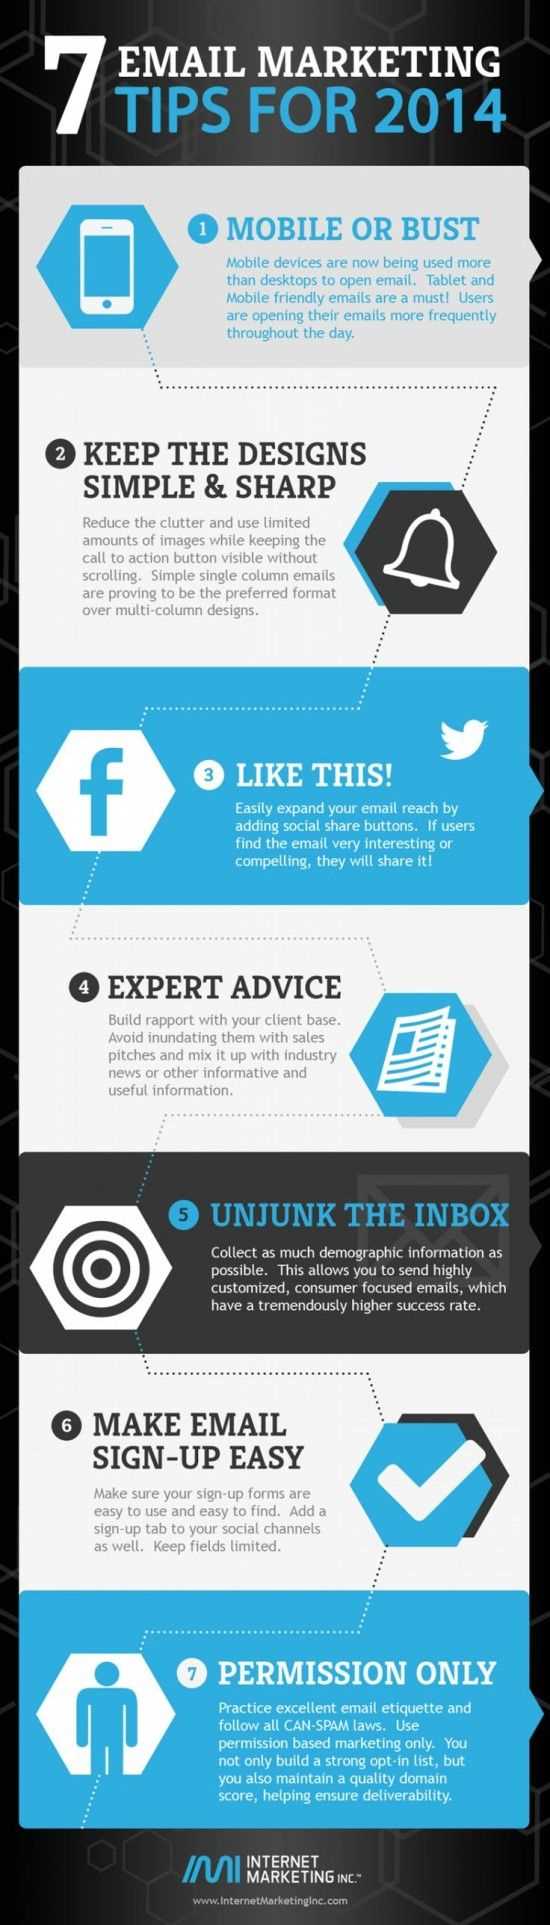 Email-маркетинг (Инфографика)